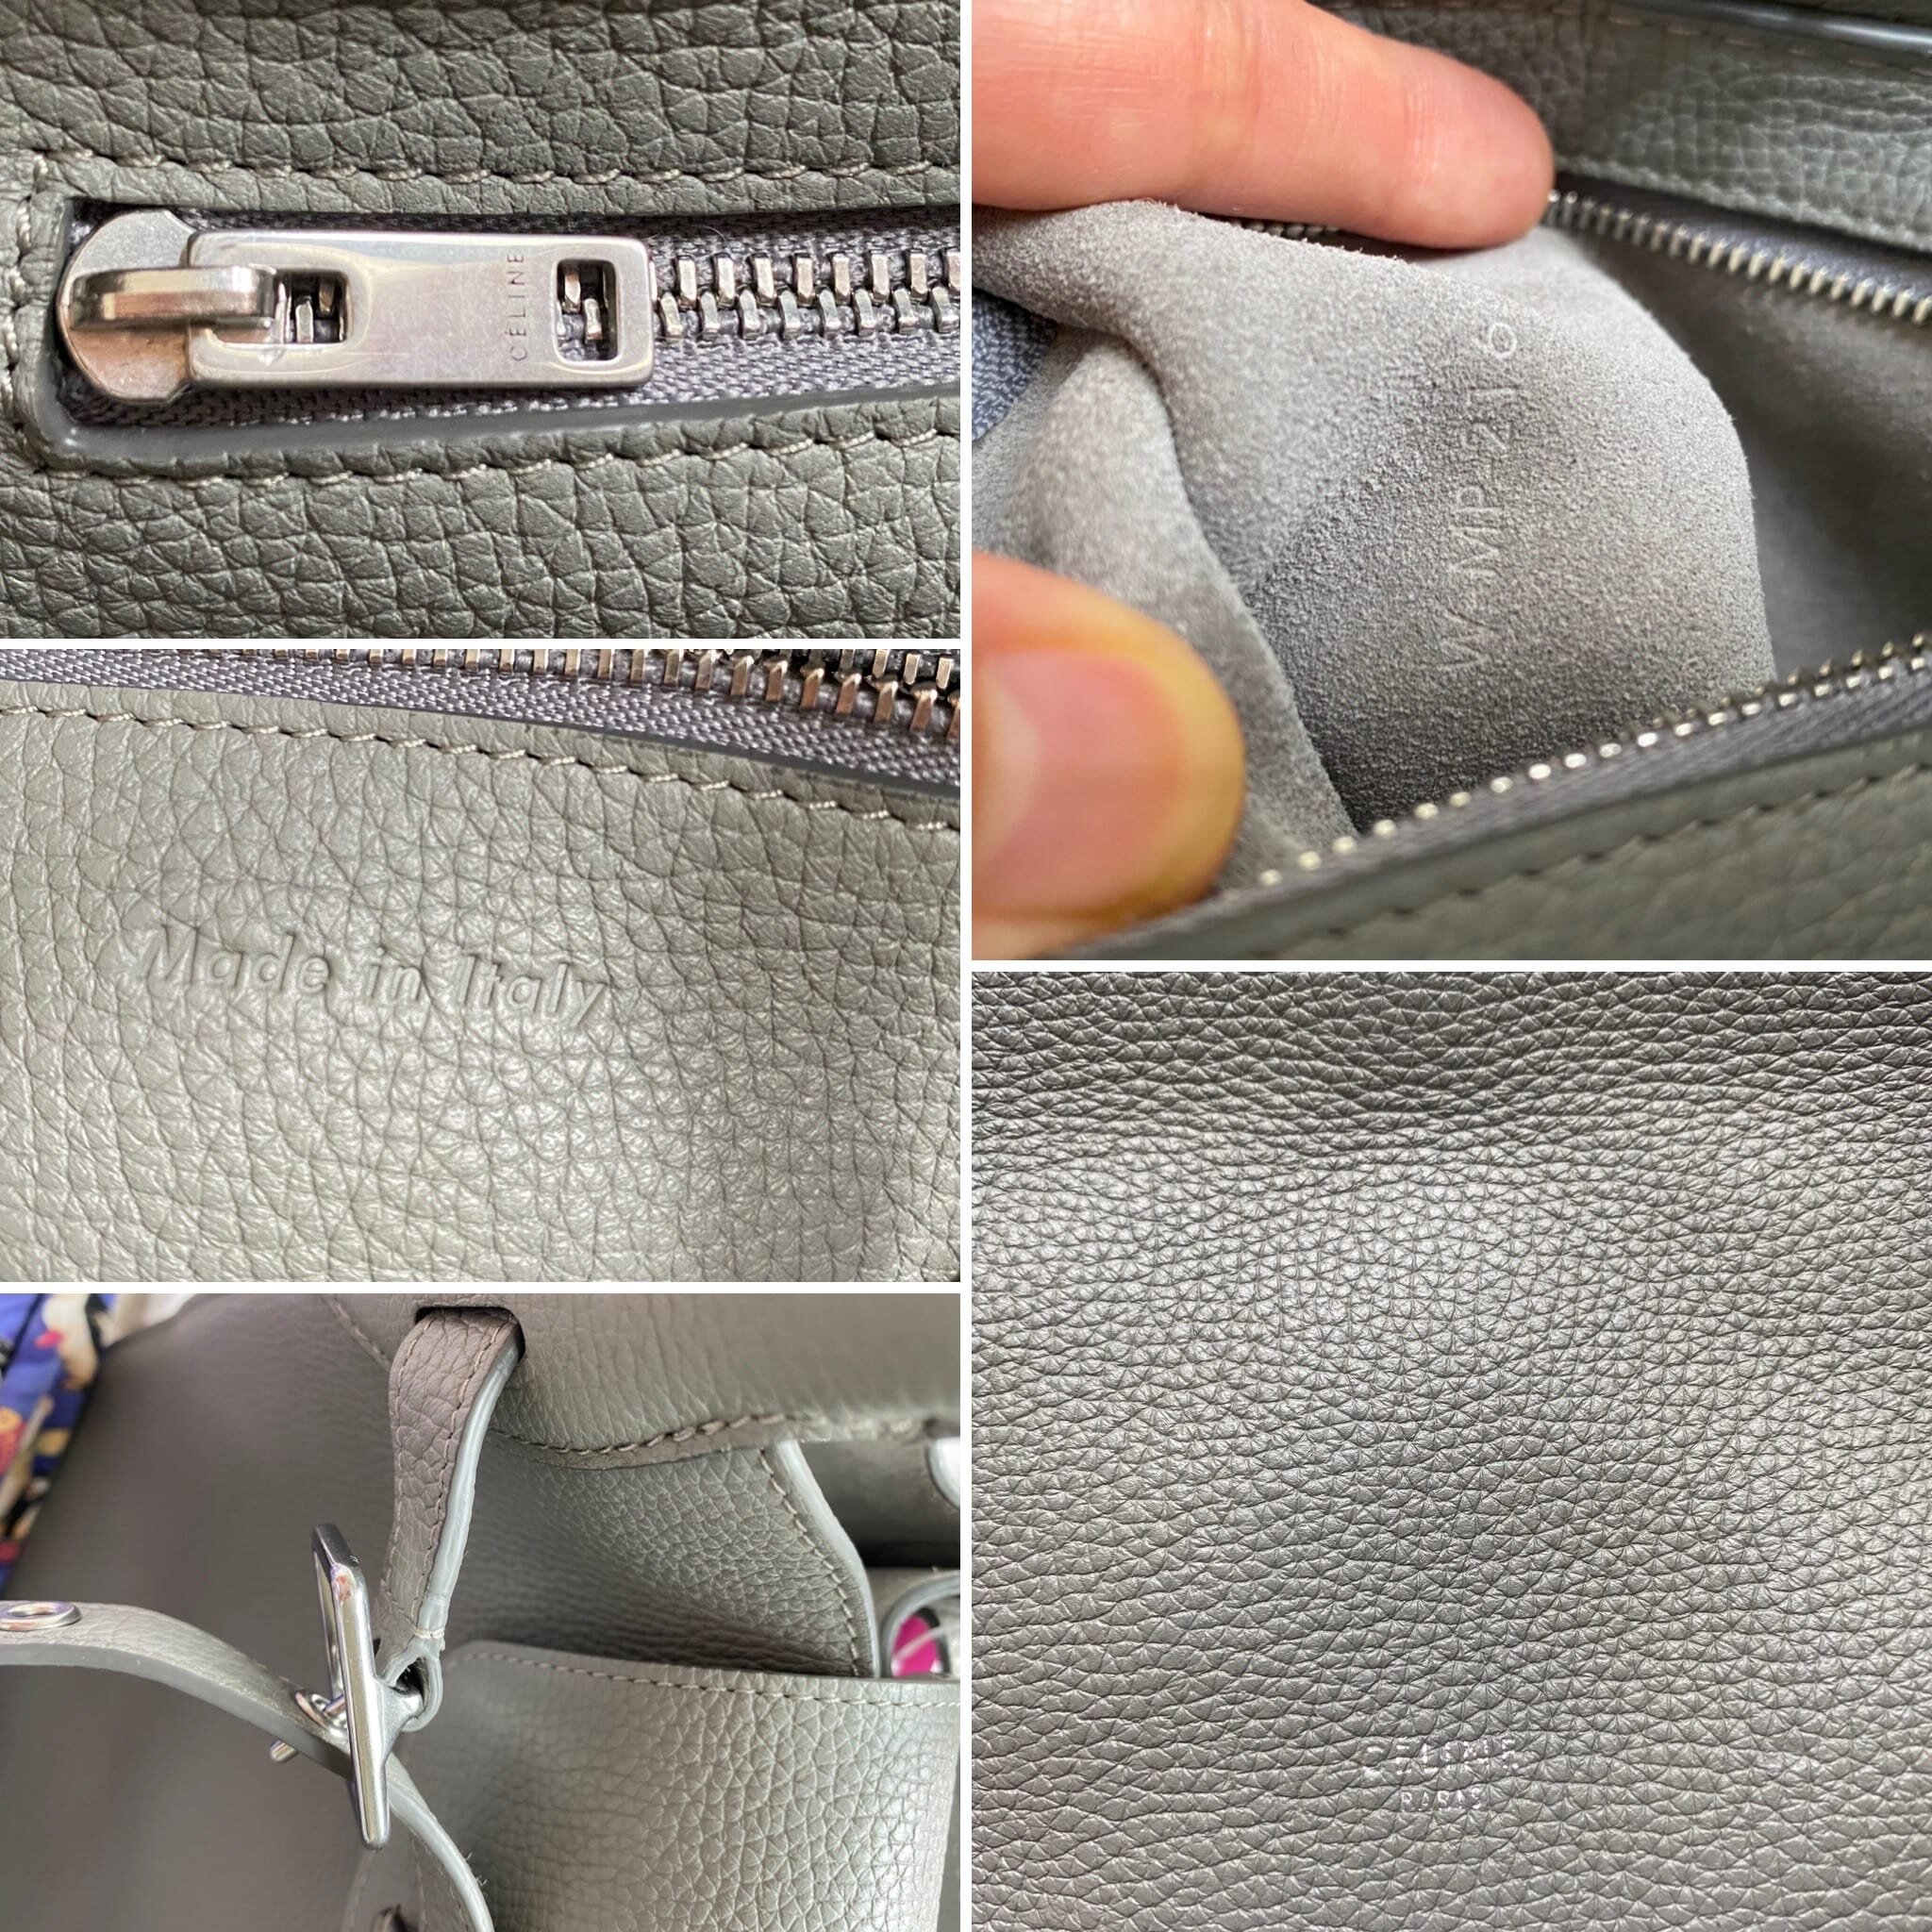 Help identifying vintage Celine bag : r/handbags